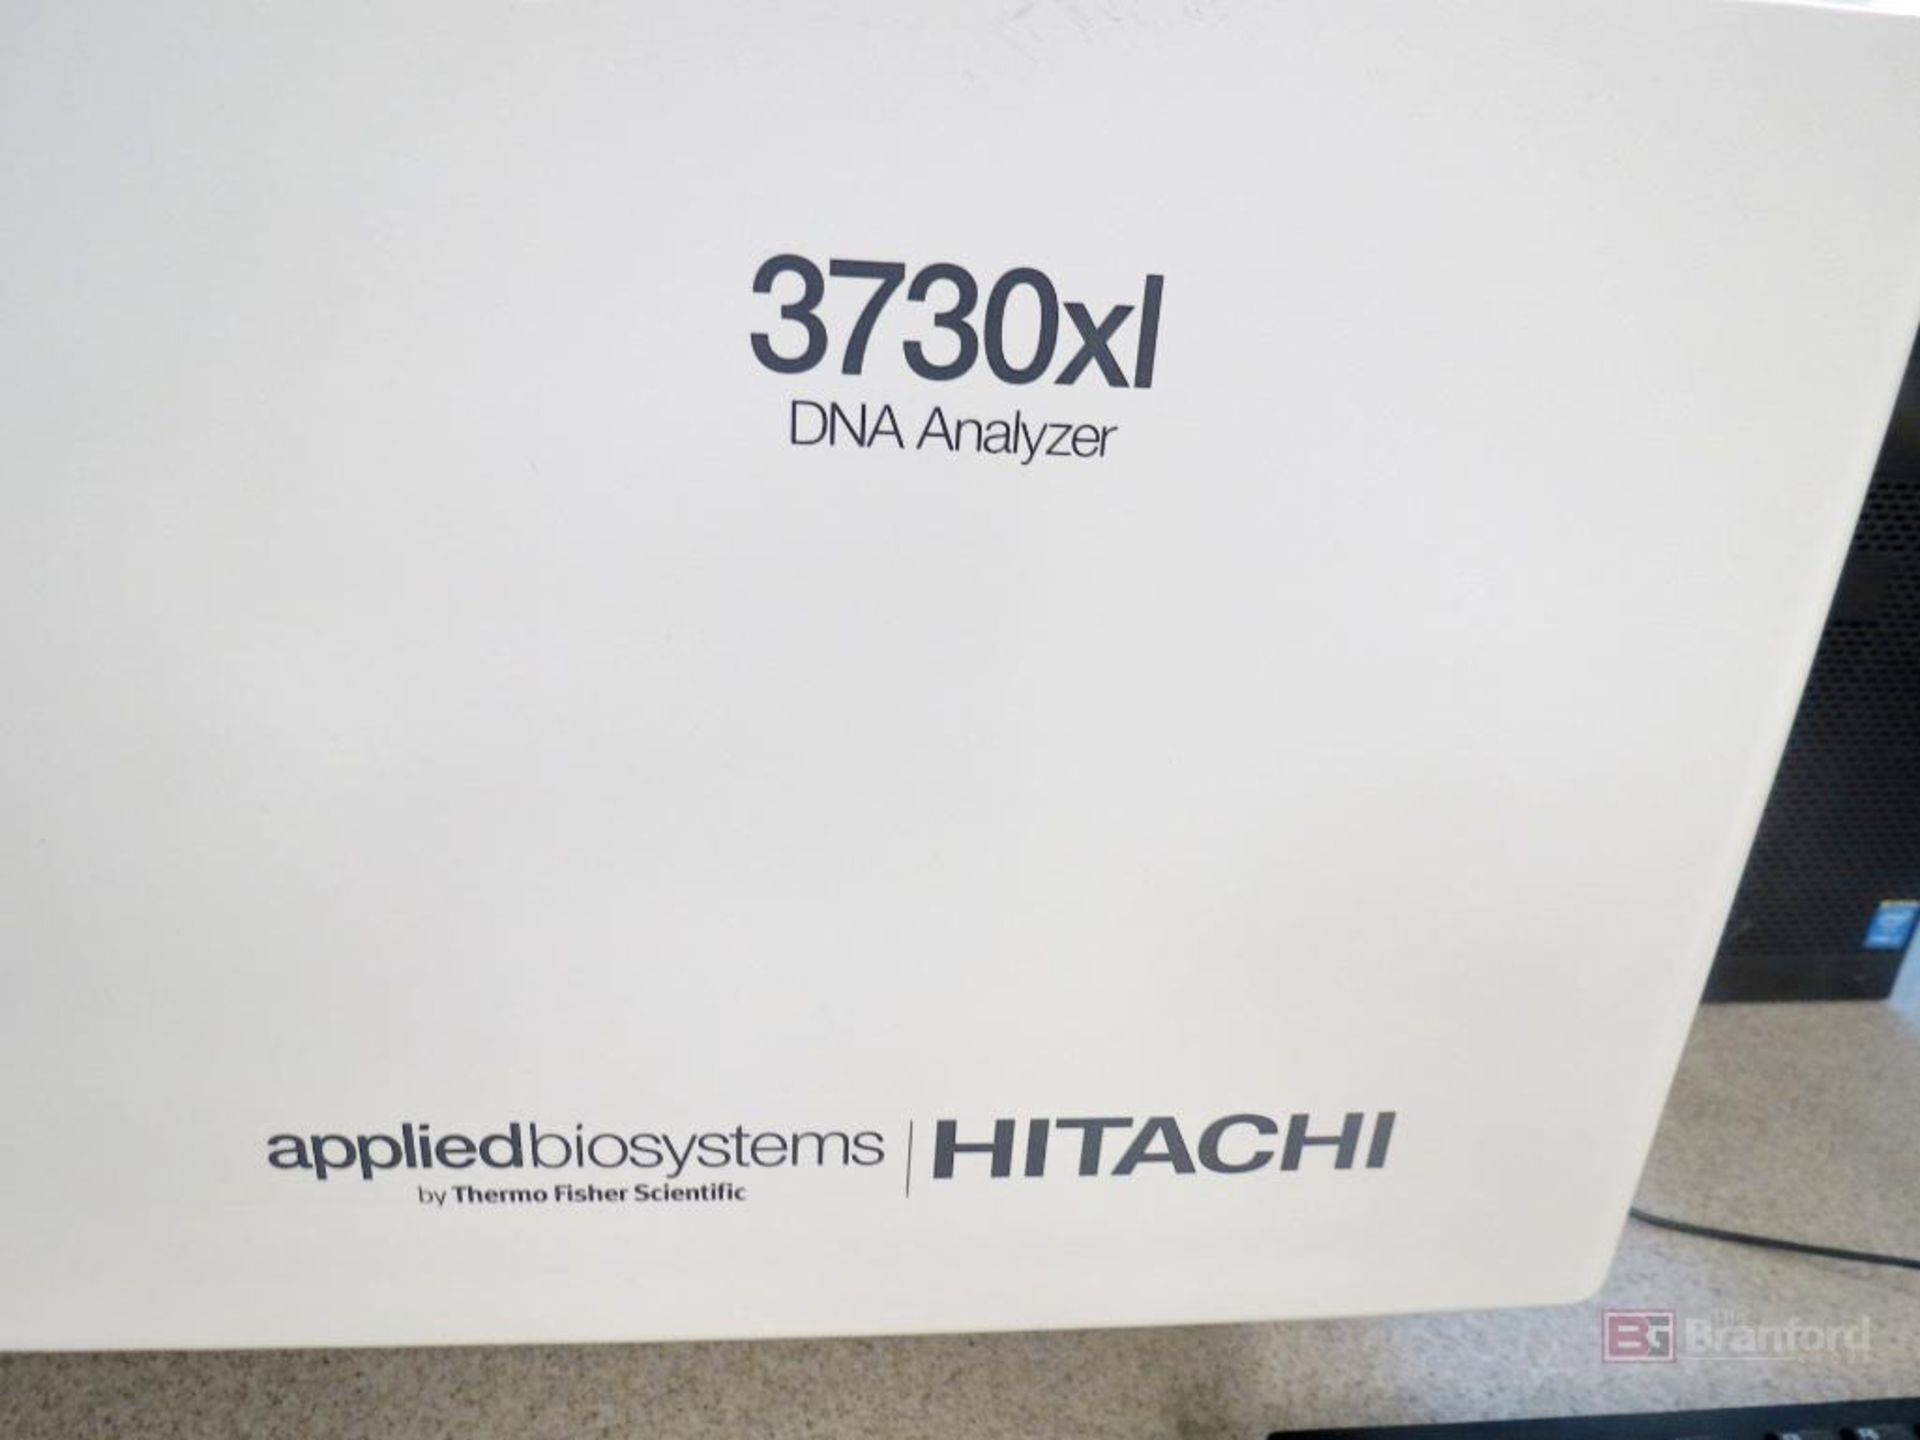 Hitachi Thermo Applied Biosystems 3730xl DNA Analyzer - Image 4 of 6